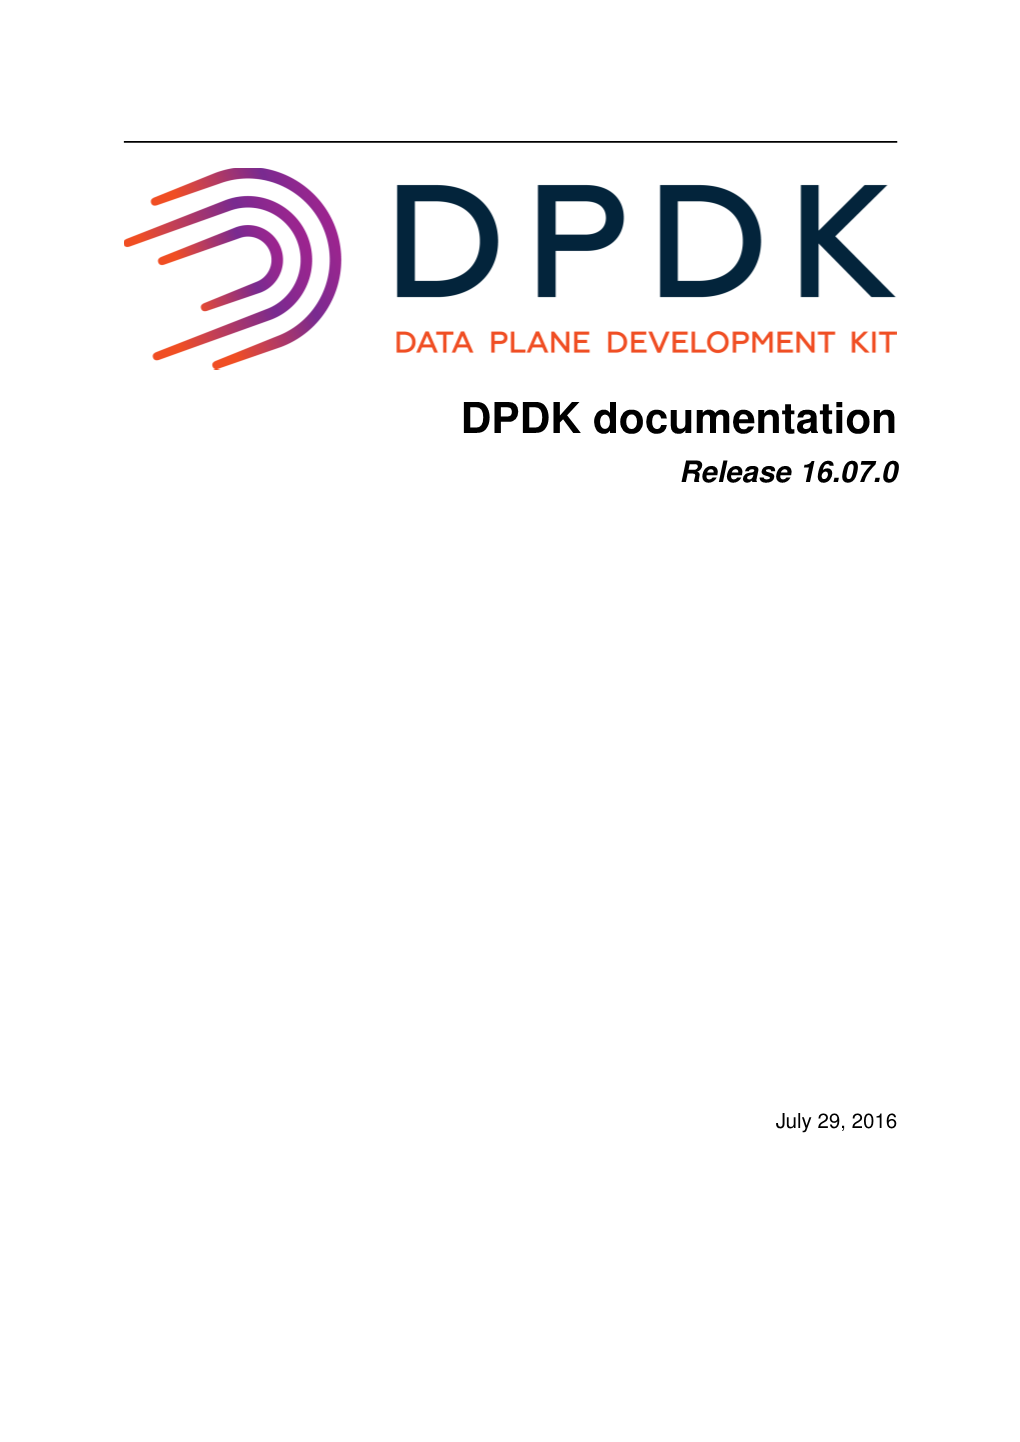 Running DPDK Applications